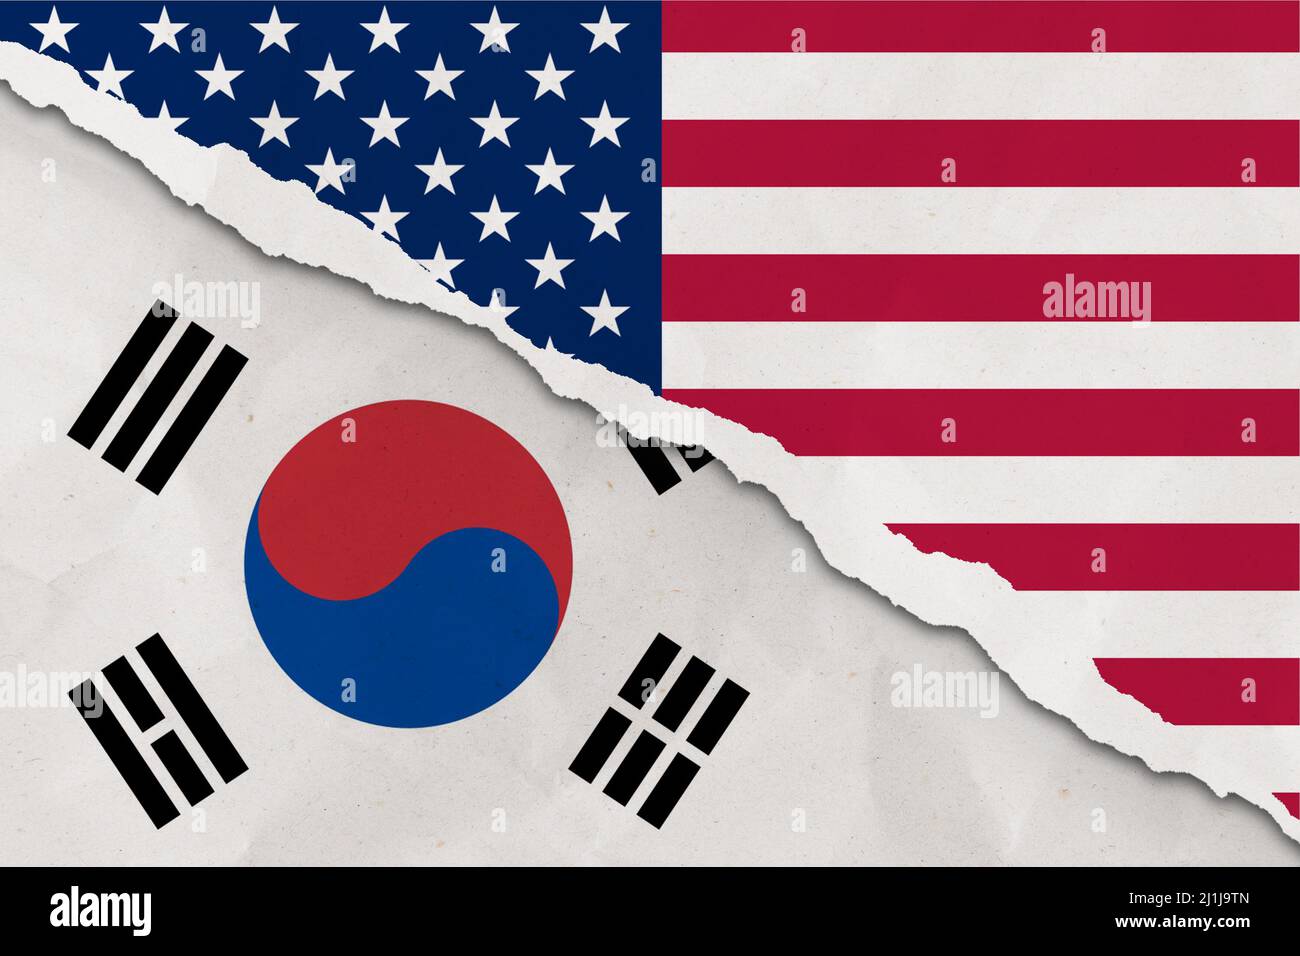 Le drapeau des États-Unis et de la Corée du Sud a déchiré le papier grince fond. Résumé économie des États-Unis et de la Corée du Sud, conflits politiques, concept de guerre Banque D'Images